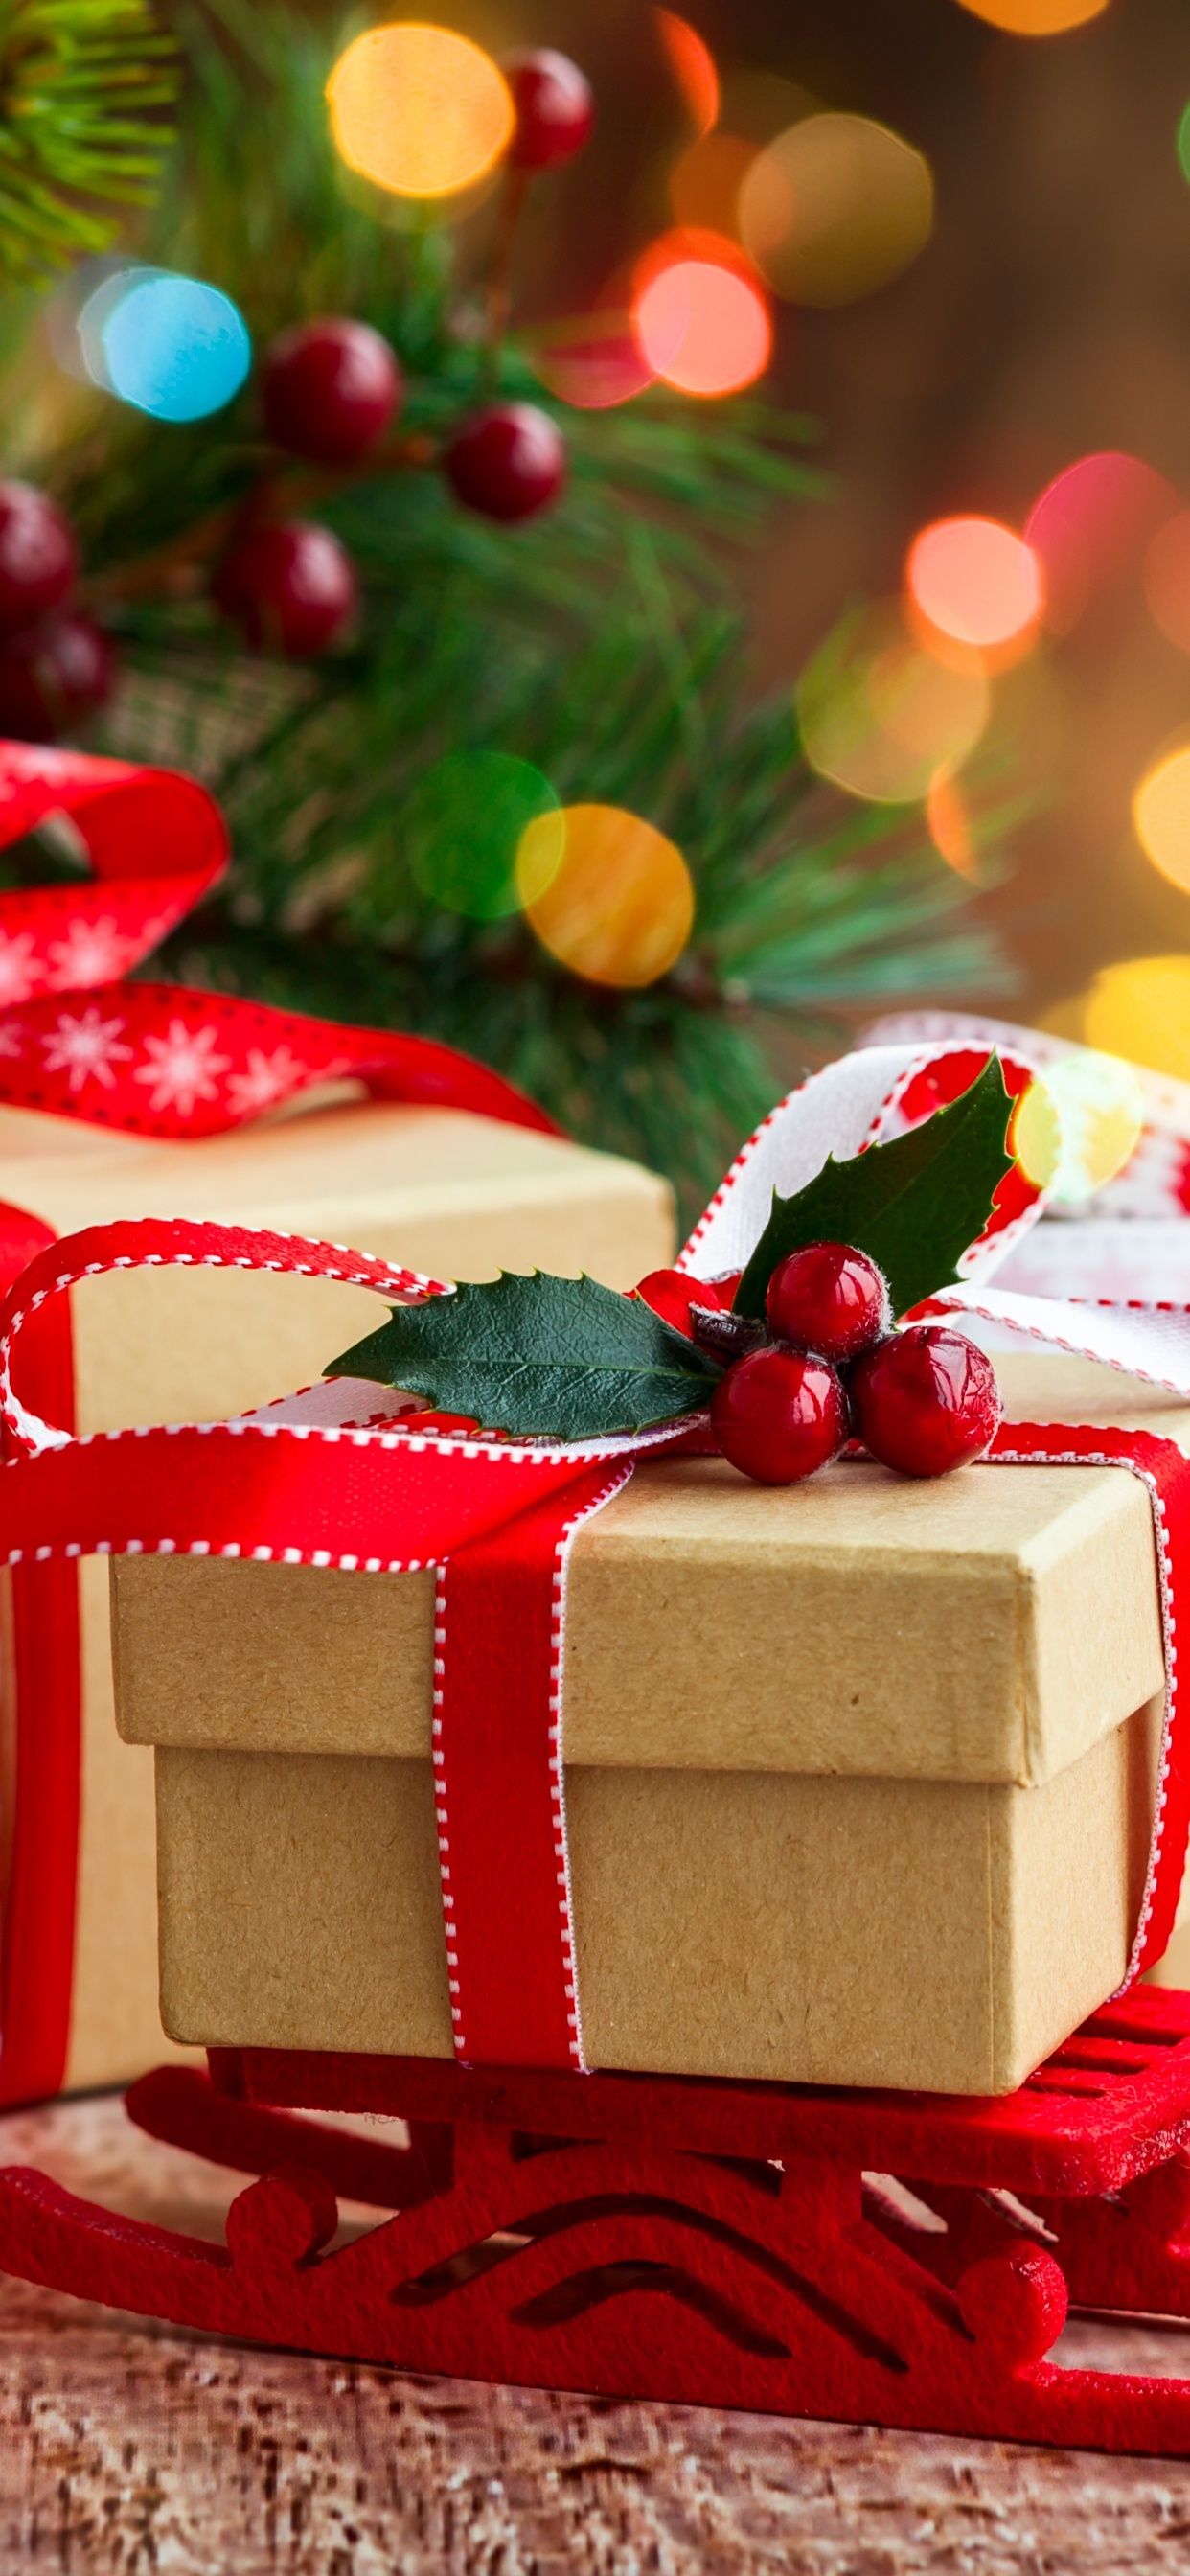 圣诞节那天, 圣诞节, 圣诞节的装饰品, 圣诞装饰, 甜点 壁纸 1242x2688 允许